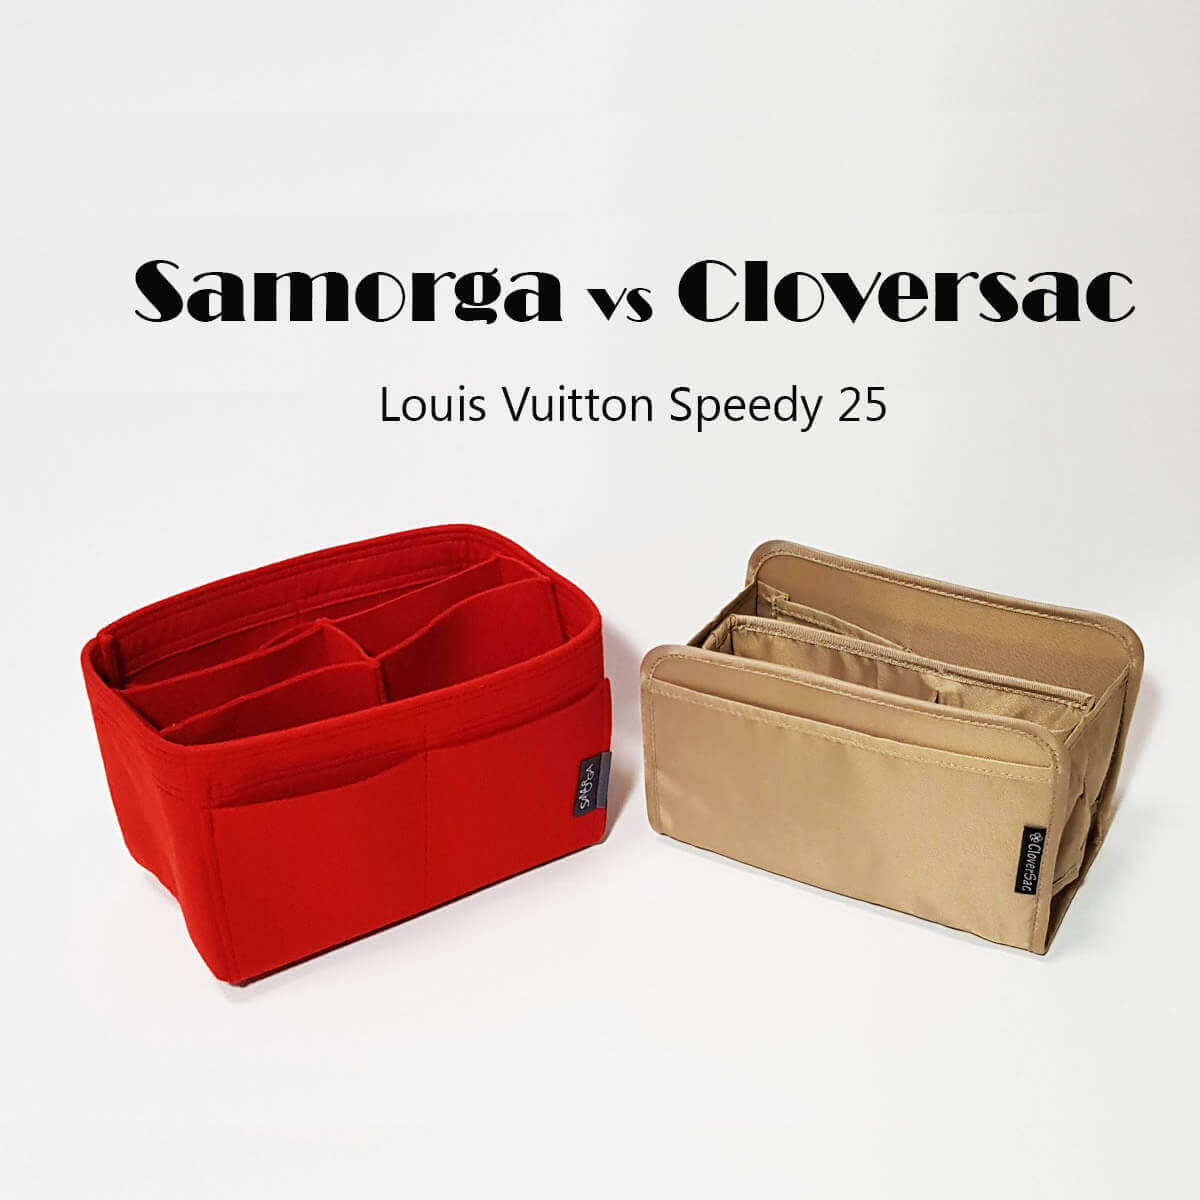 Bag Organizer Insert for Louis Vuitton Speedy 25 – Luxegarde